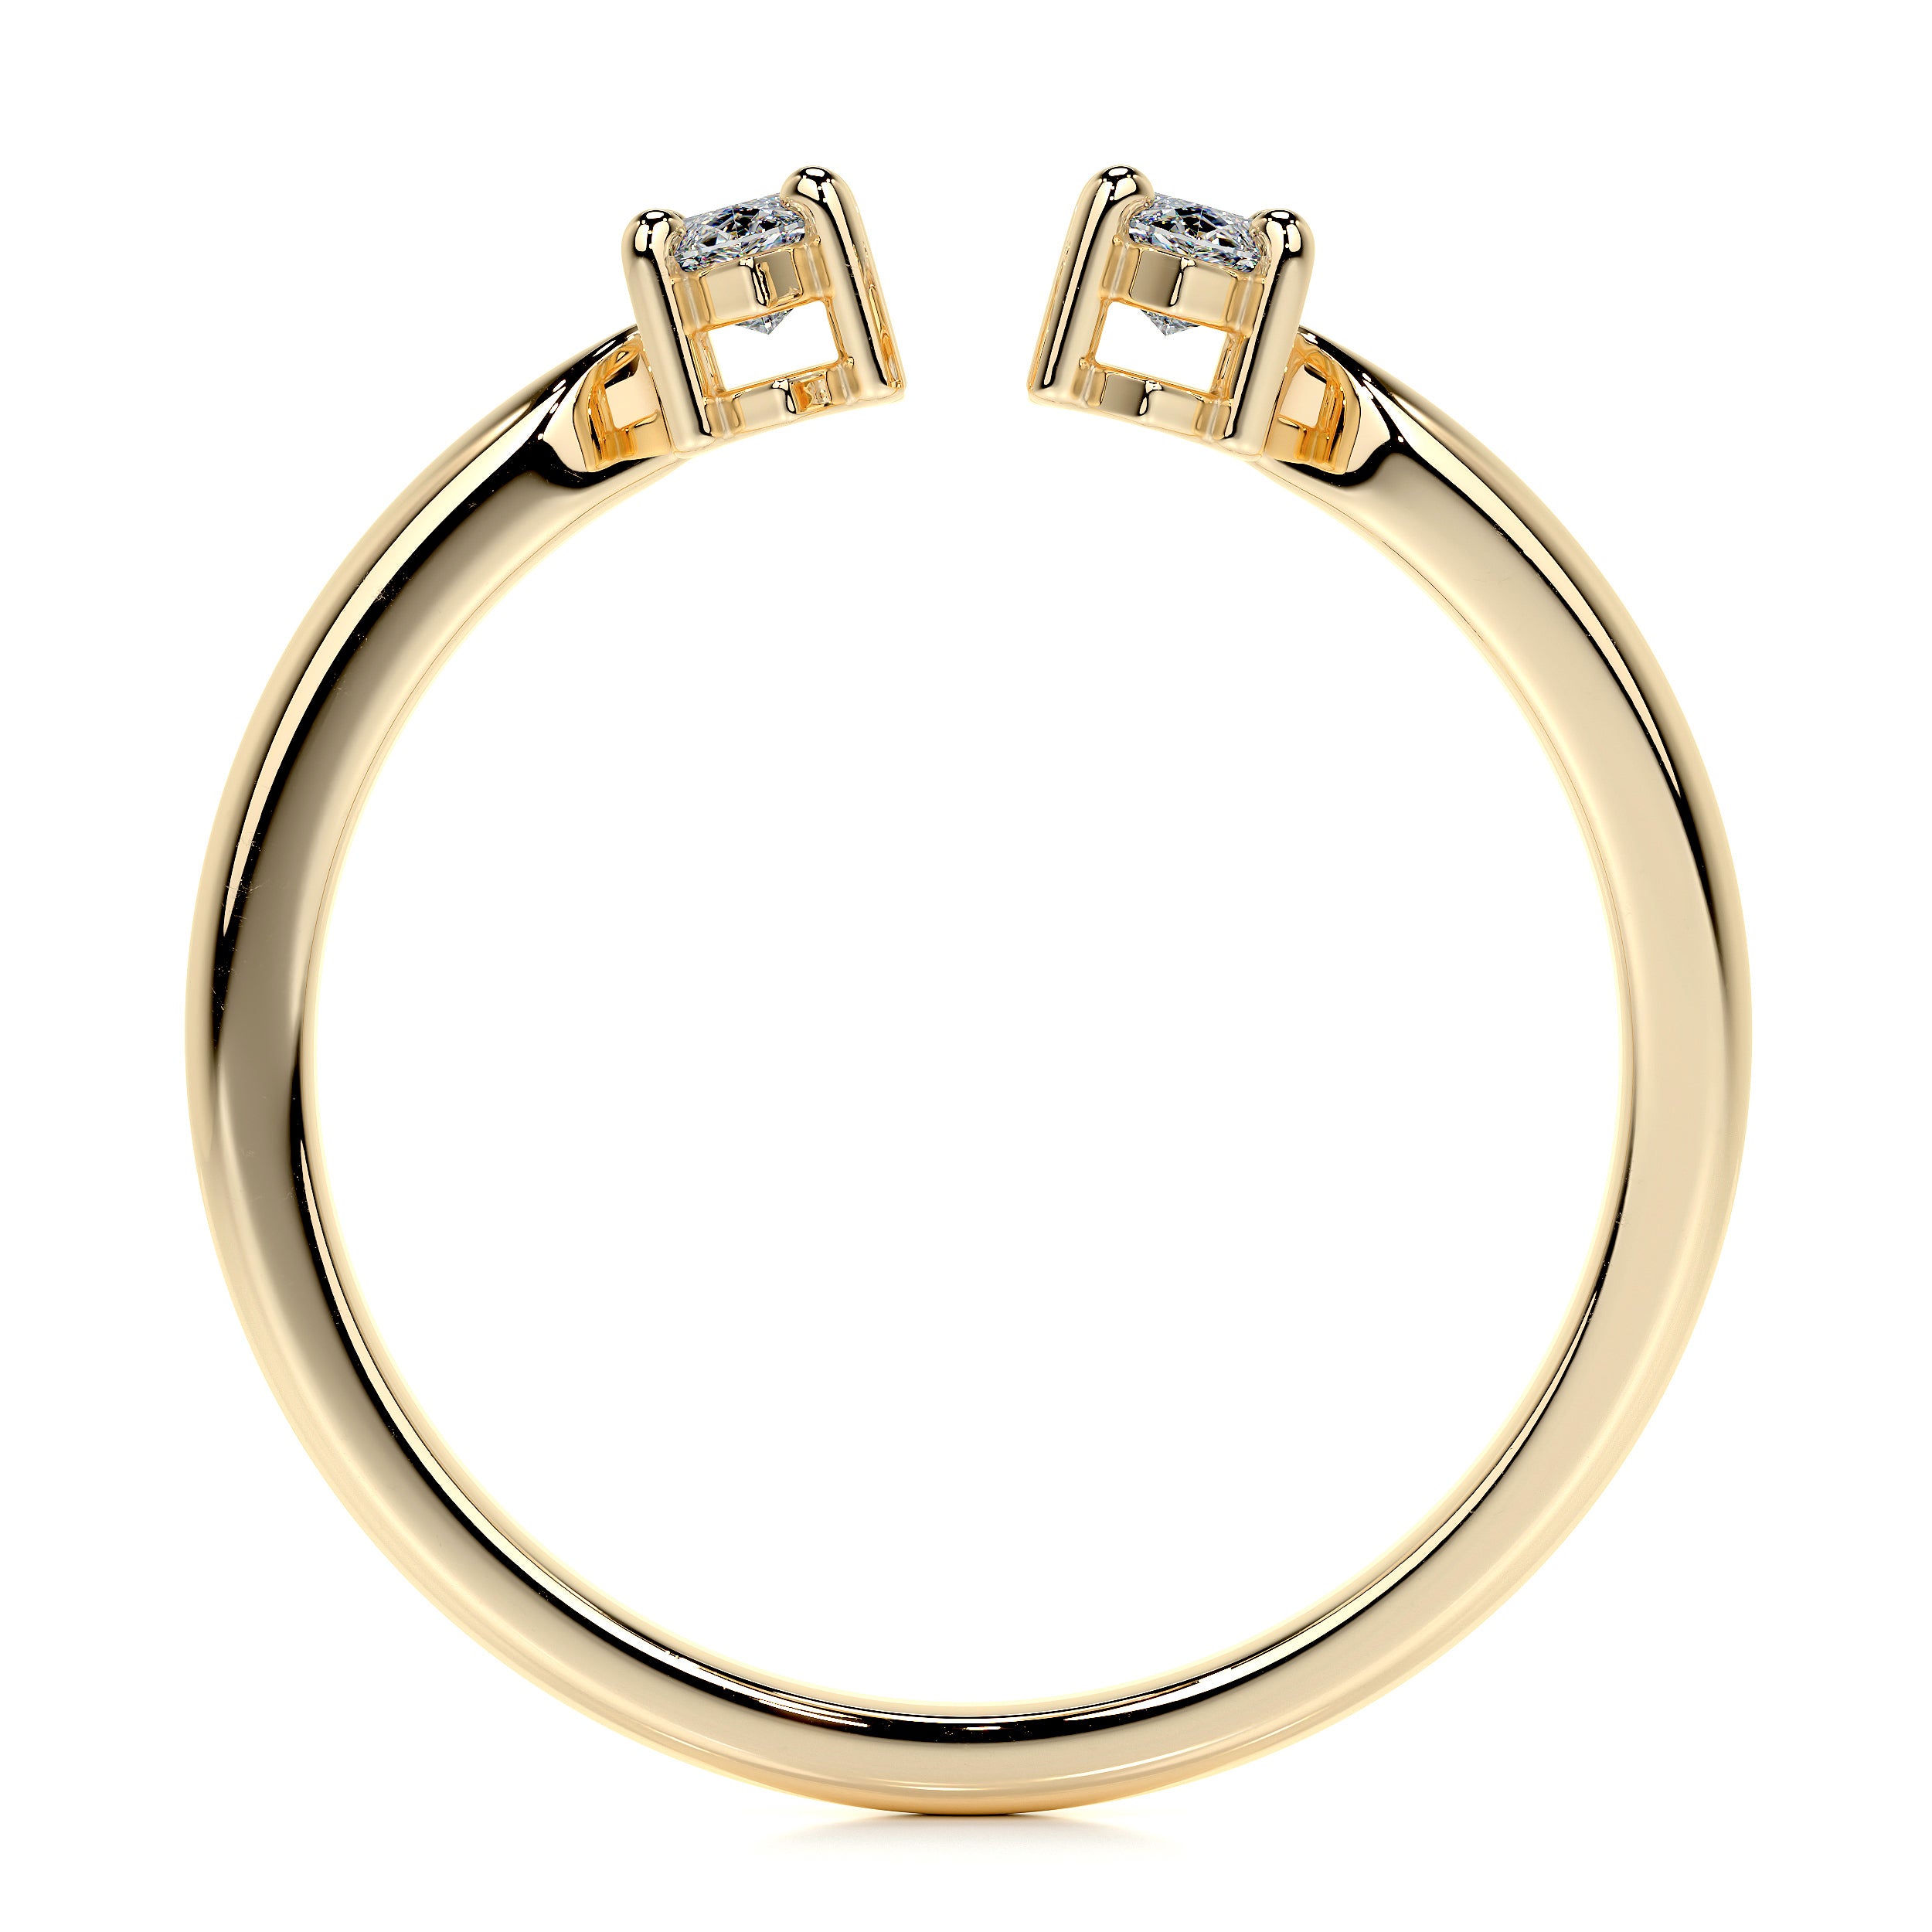 Celine Lab Grown Fashion Ring   (0.36 Carat) -18K Yellow Gold